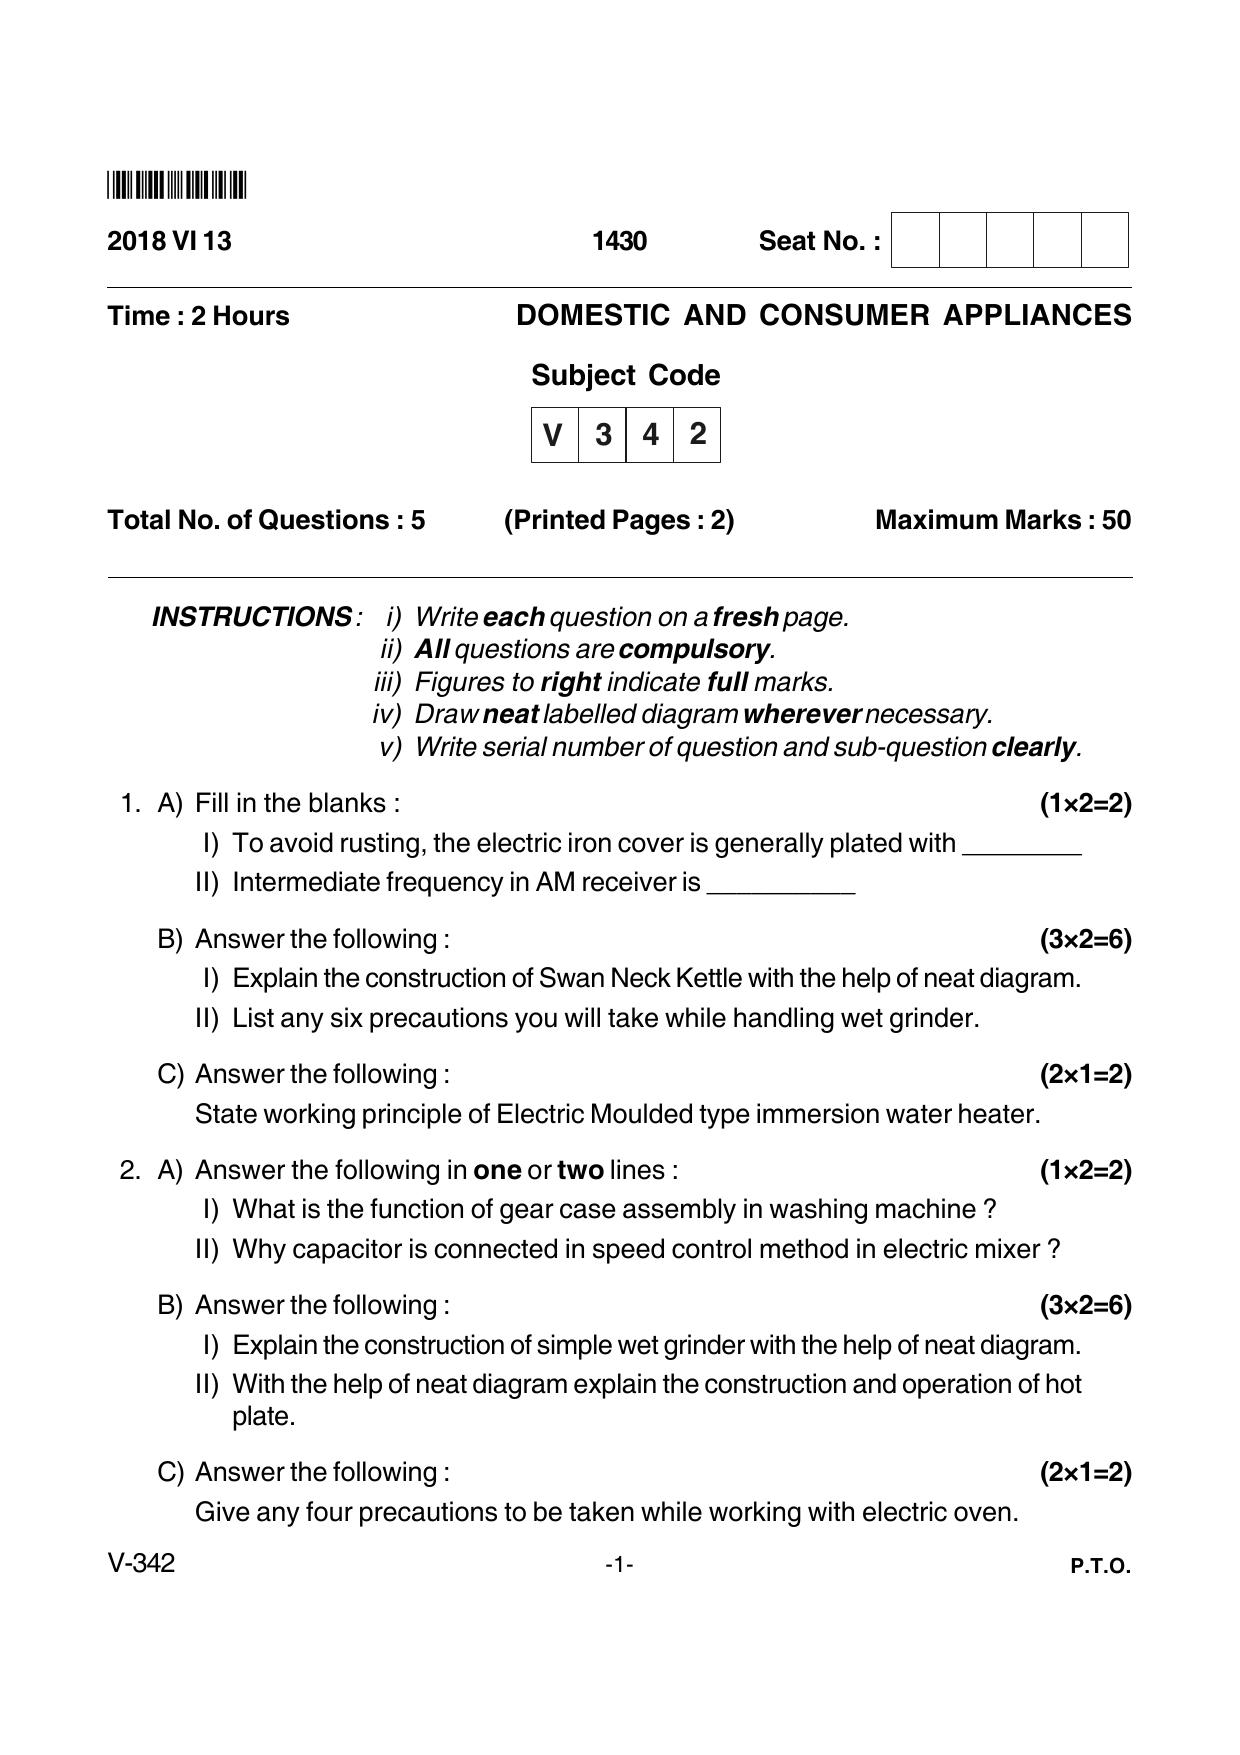 Goa Board Class 12 Domestic and Consumer Appliances  Voc 342 (June 2018) Question Paper - Page 1